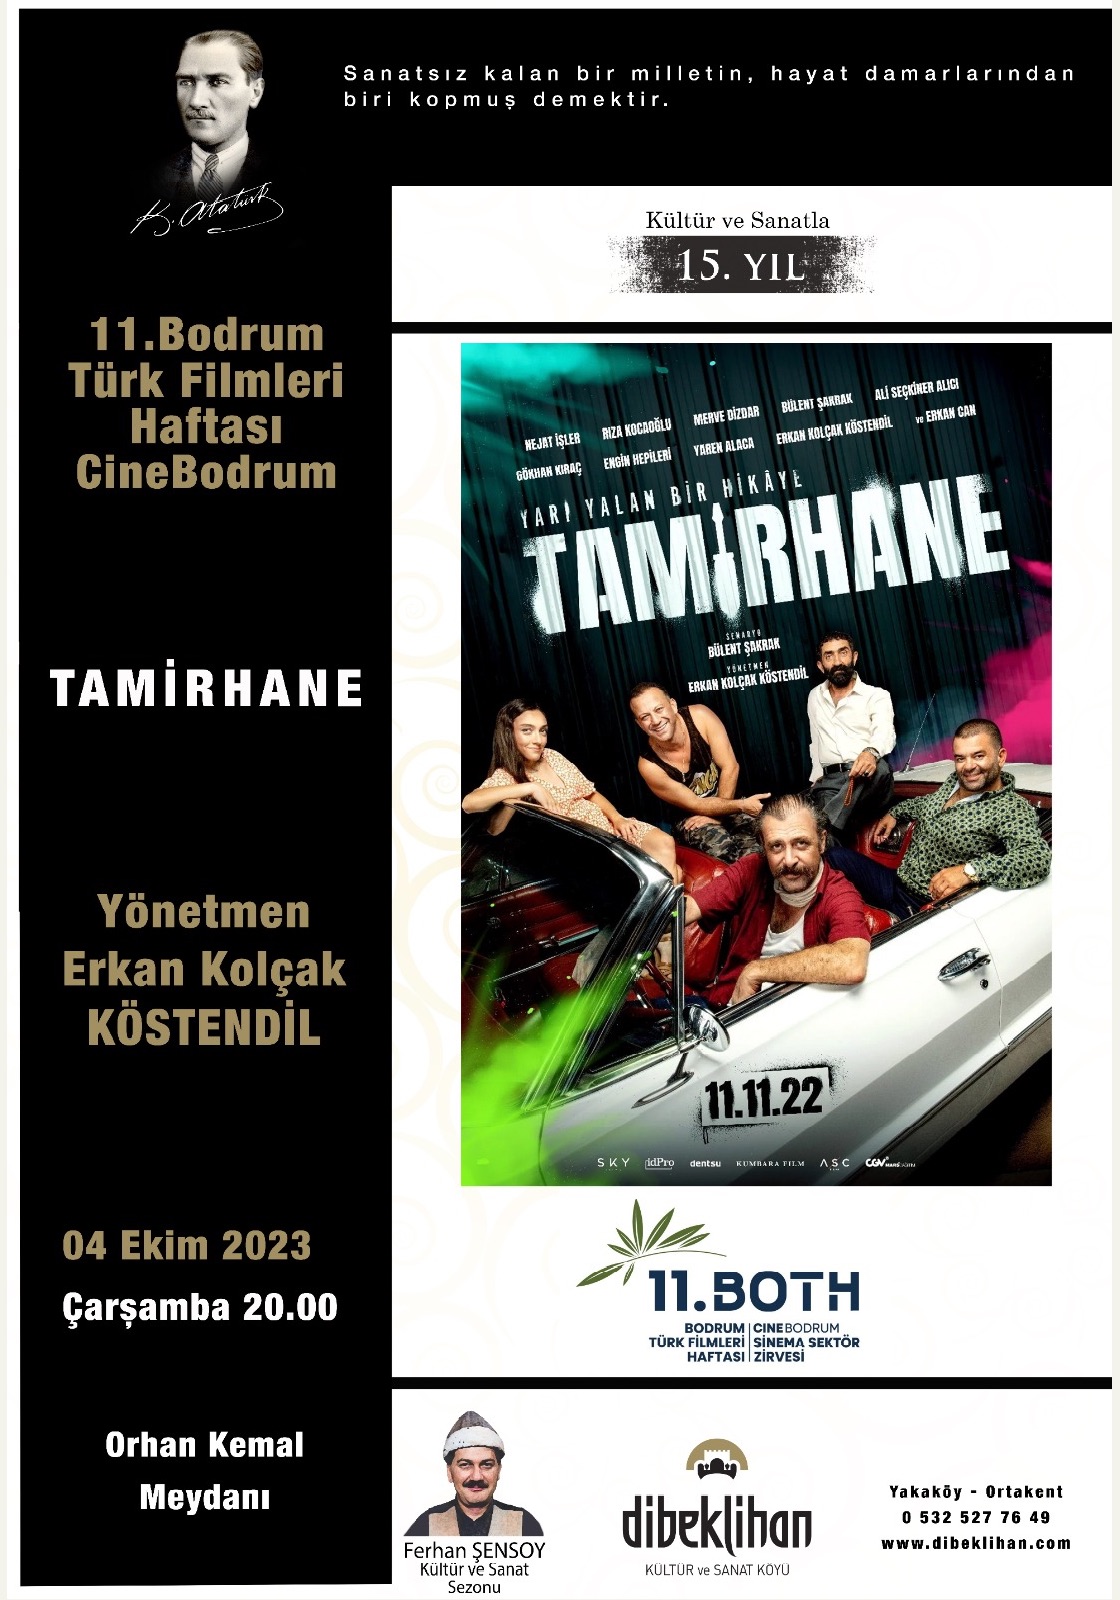 Türk Filmleri Haftası